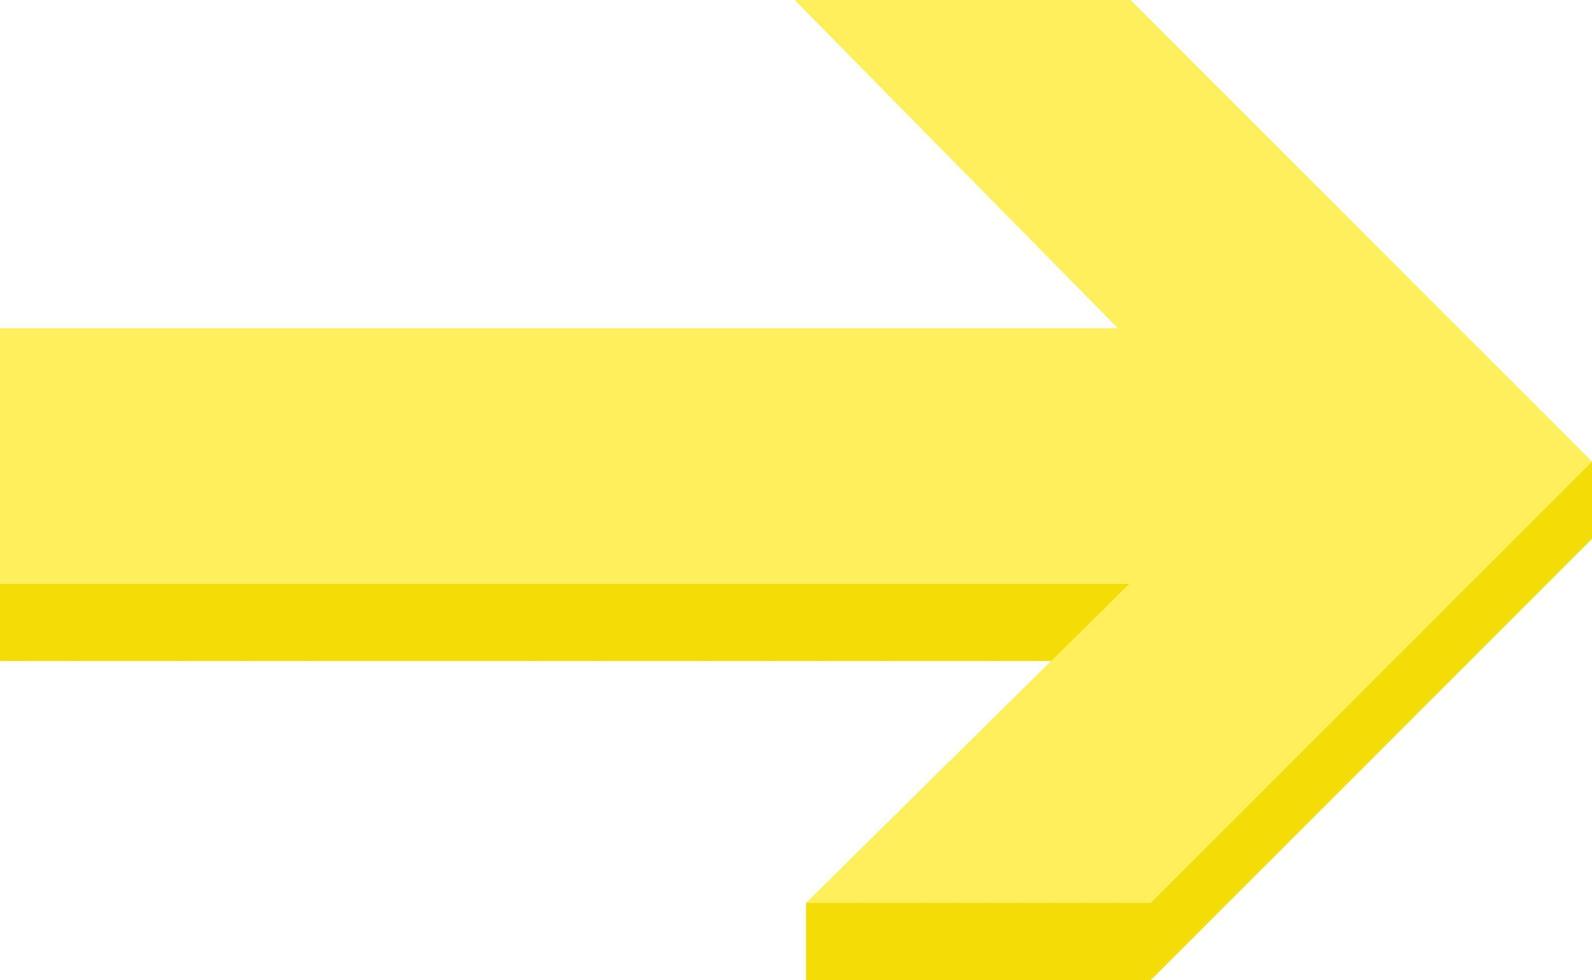 figura de seta mostrando vetor de símbolo de direção